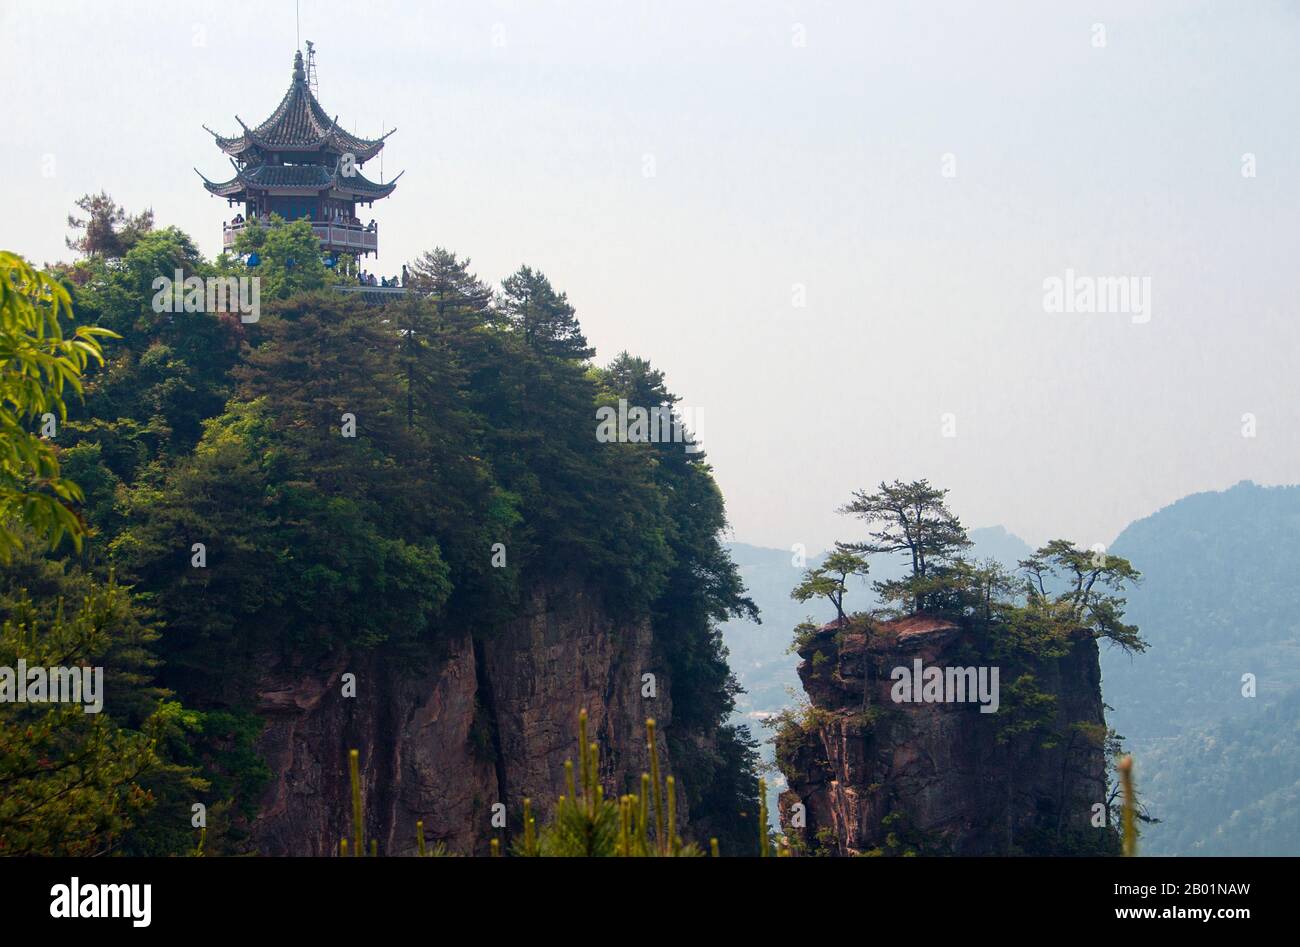 Cina: Pagoda delle sei meraviglie, area panoramica di Wulingyuan (Zhangjiajie), provincia di Hunan. La riserva panoramica di Wulingyuan è un'area panoramica e di interesse storico nella provincia di Hunan. È nota per i suoi circa 3.100 alti pilastri di arenaria di quarzite, alcuni dei quali hanno un'altezza di oltre 800 metri (2.600 piedi) e sono un tipo di formazione carsica. Nel 1992 è stato dichiarato patrimonio dell'umanità dall'UNESCO. Foto Stock